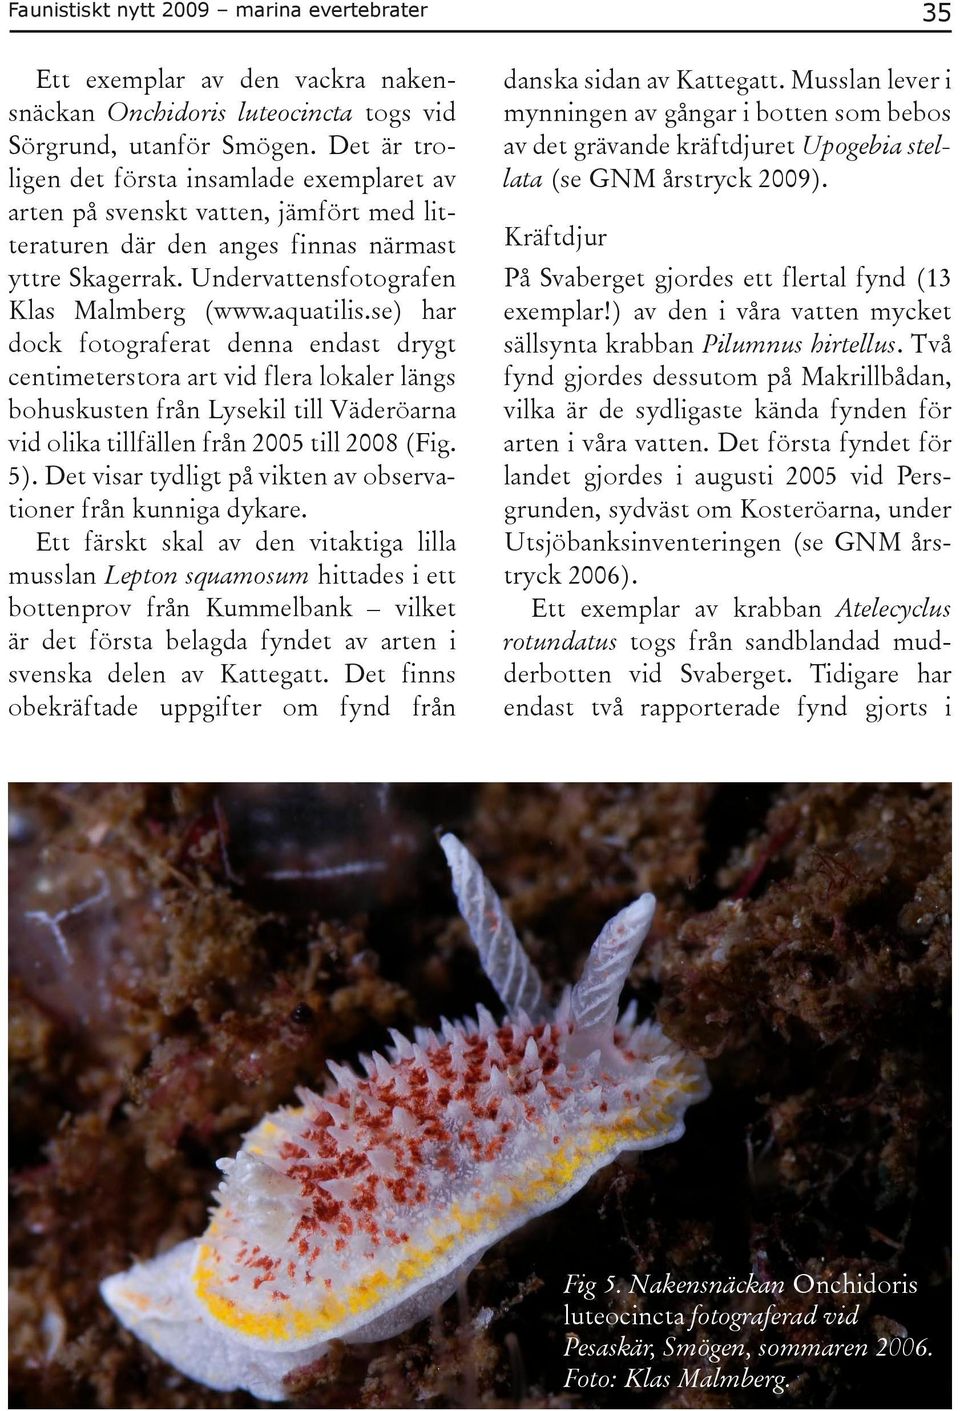 se) har dock fotograferat denna endast drygt centimeterstora art vid flera lokaler längs bohuskusten från Lysekil till Väderöarna vid olika tillfällen från 2005 till 2008 (Fig. 5).